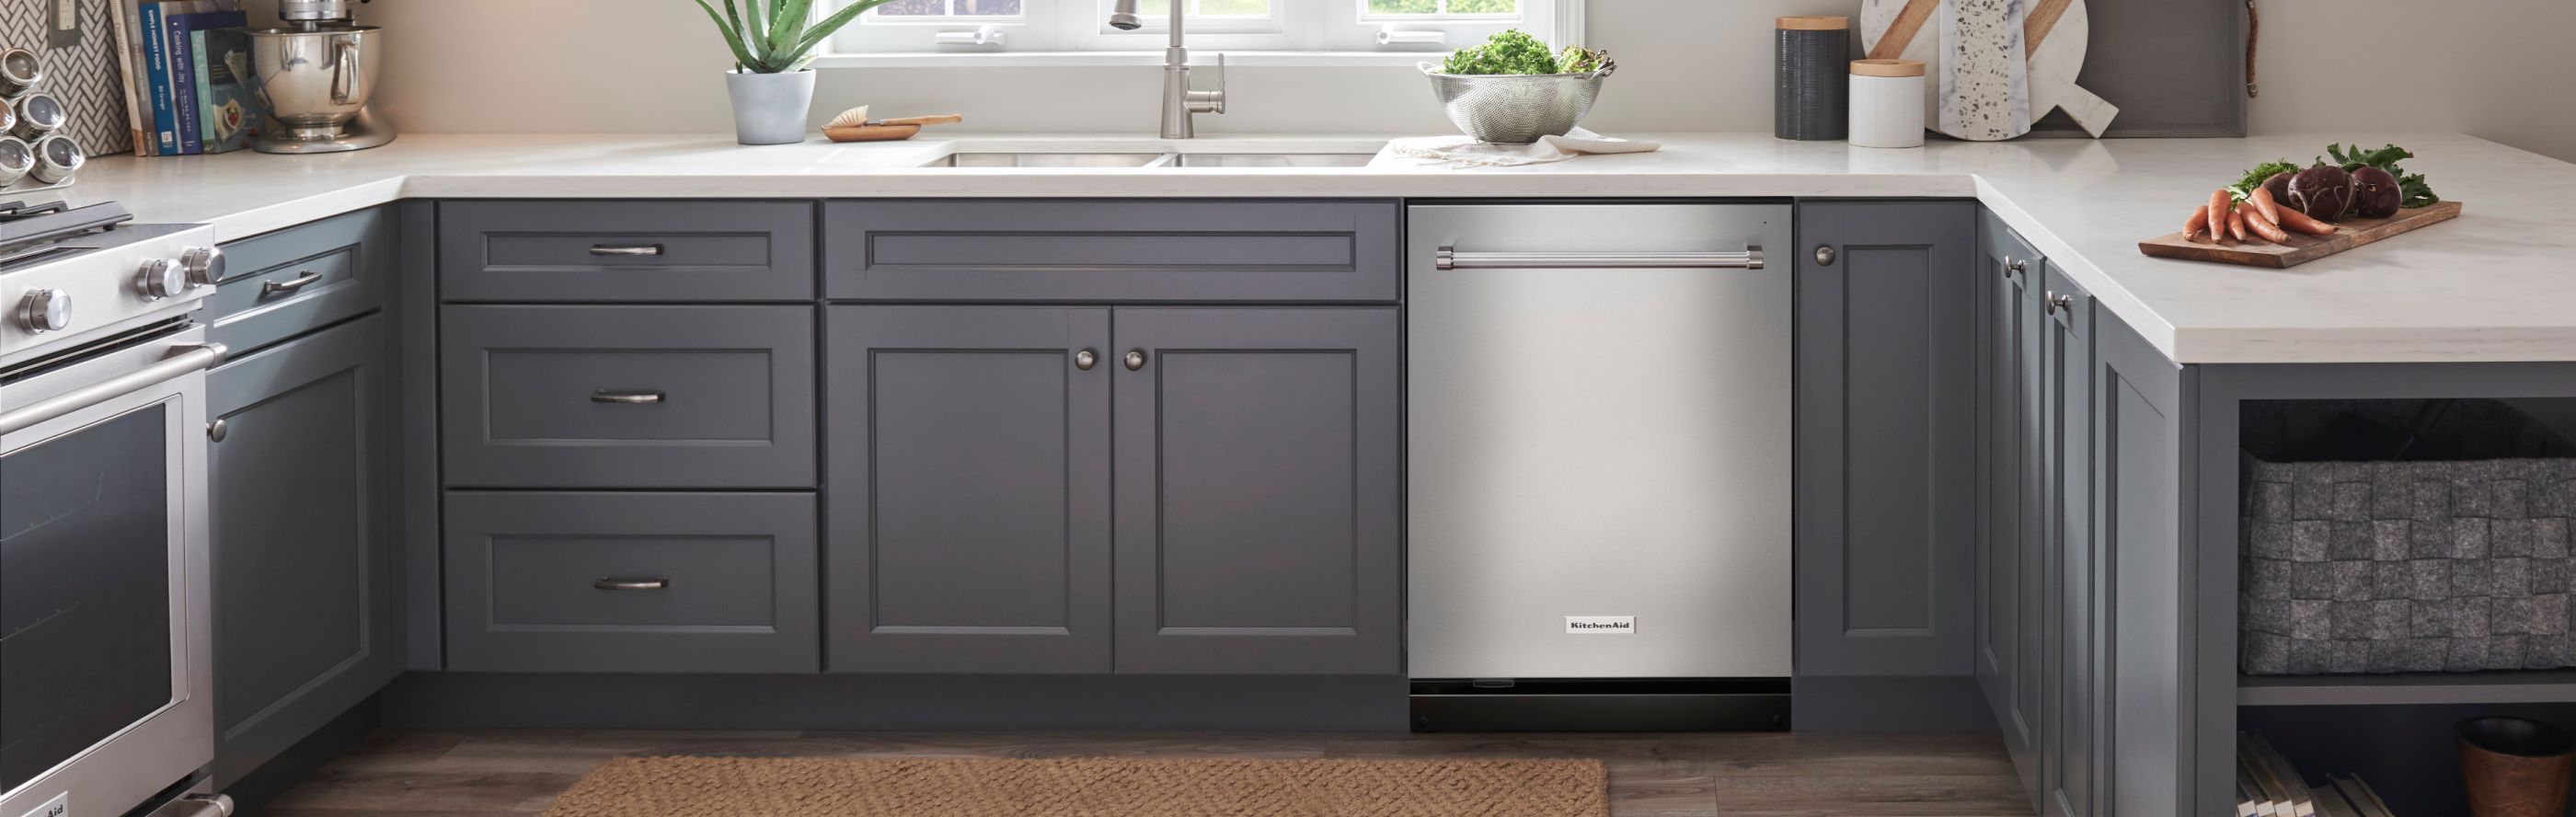 A stainless steel KitchenAid® dishwasher in a modern kitchen